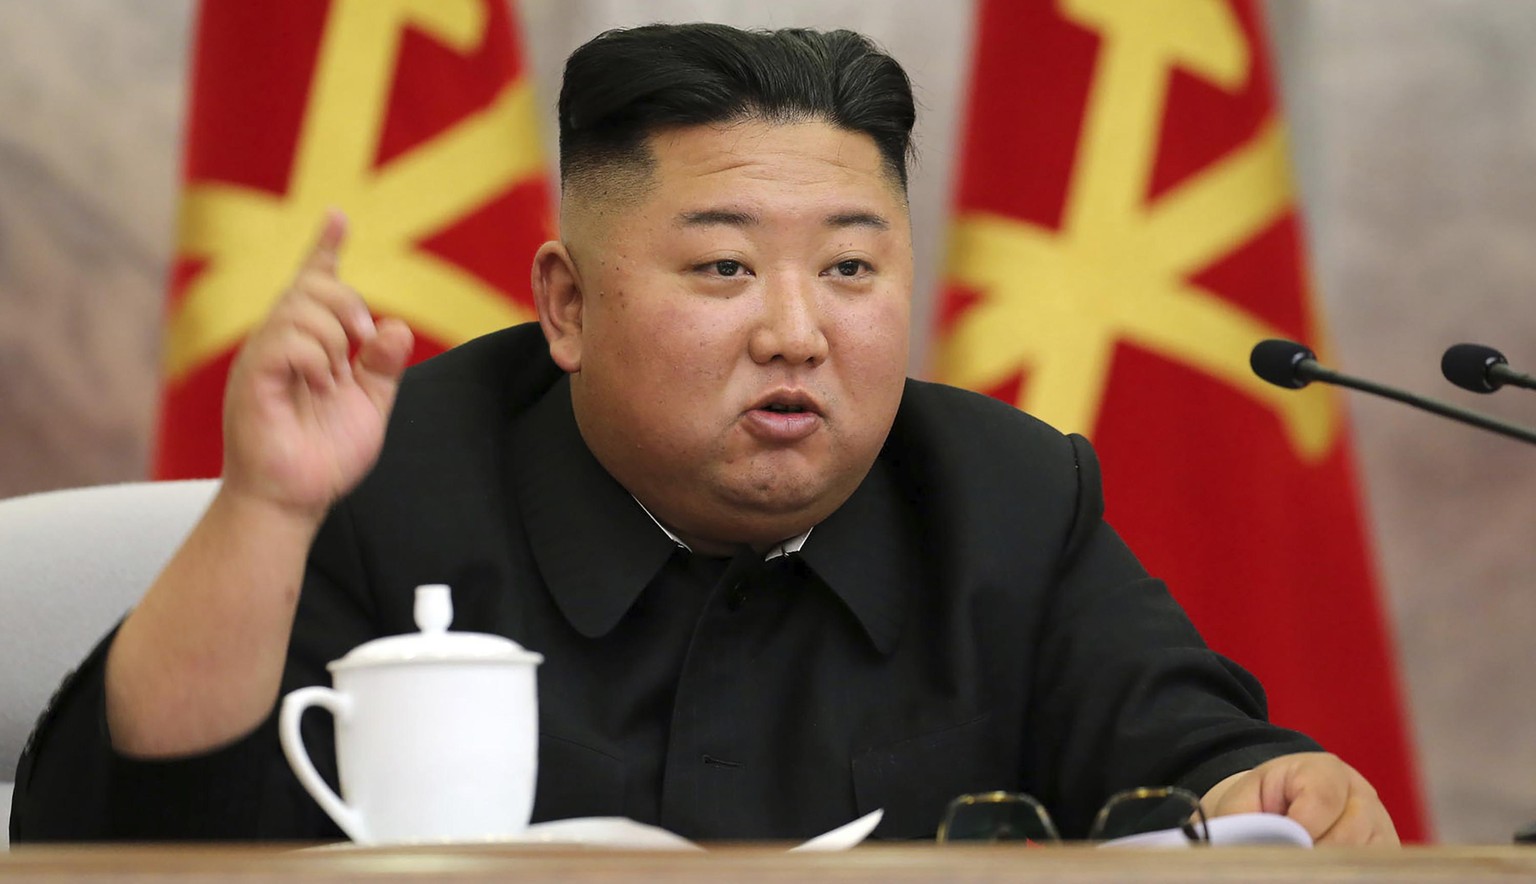 Nordkoreas Diktator Kim Jong-un hat zu allem was zu sagen, denn er ist fast allwissend.